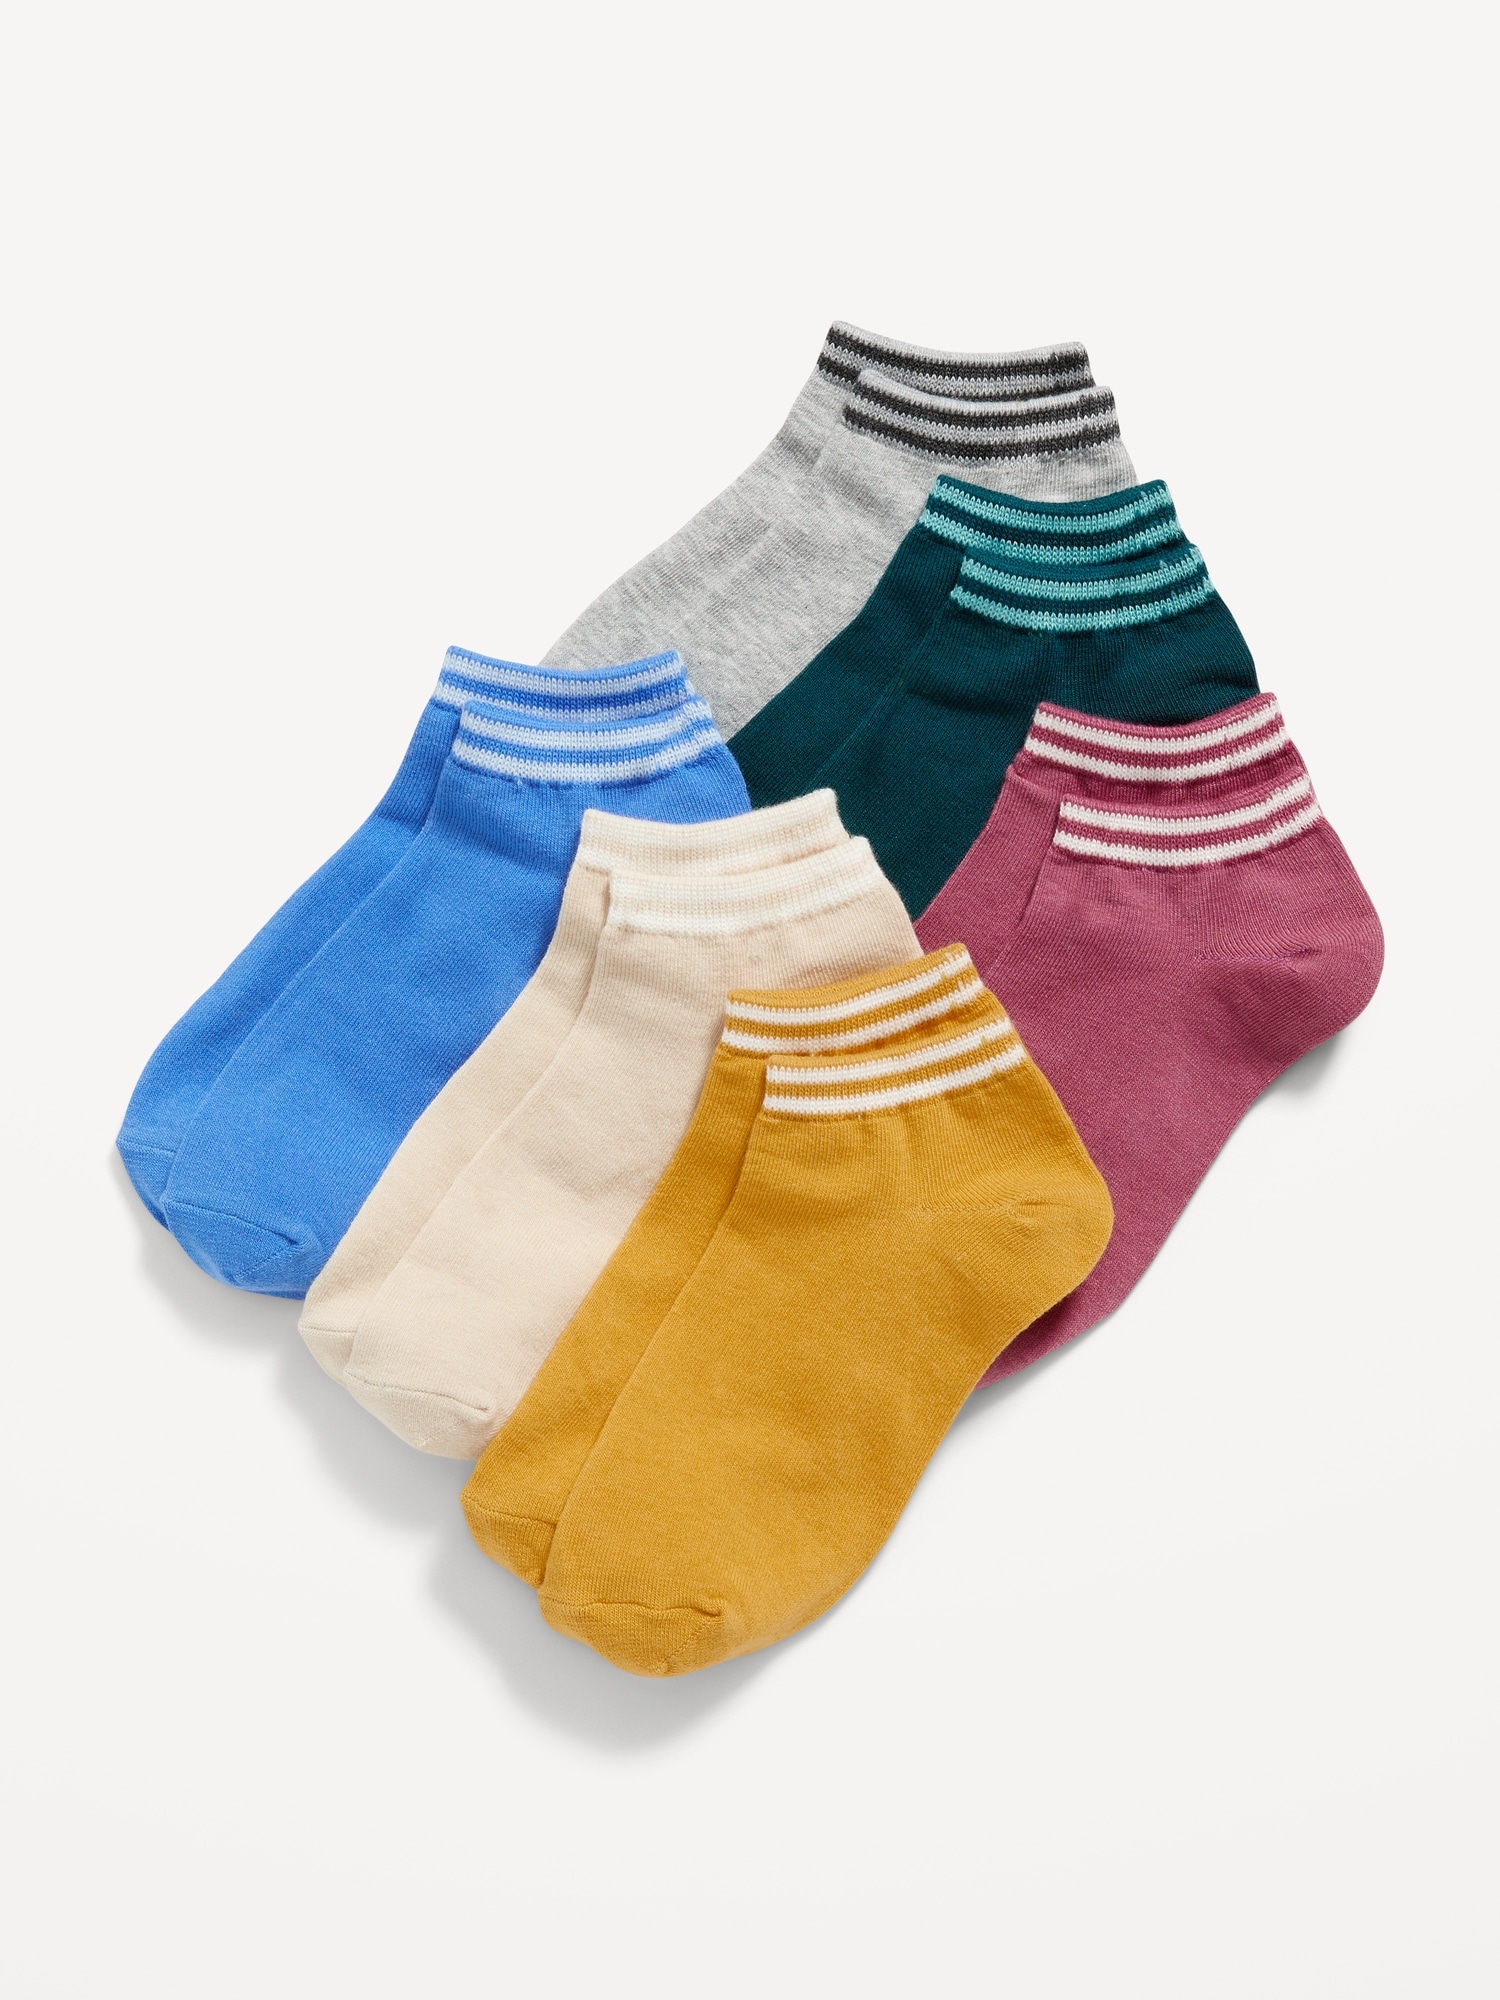 Girls' Socks, Plain & Patterned